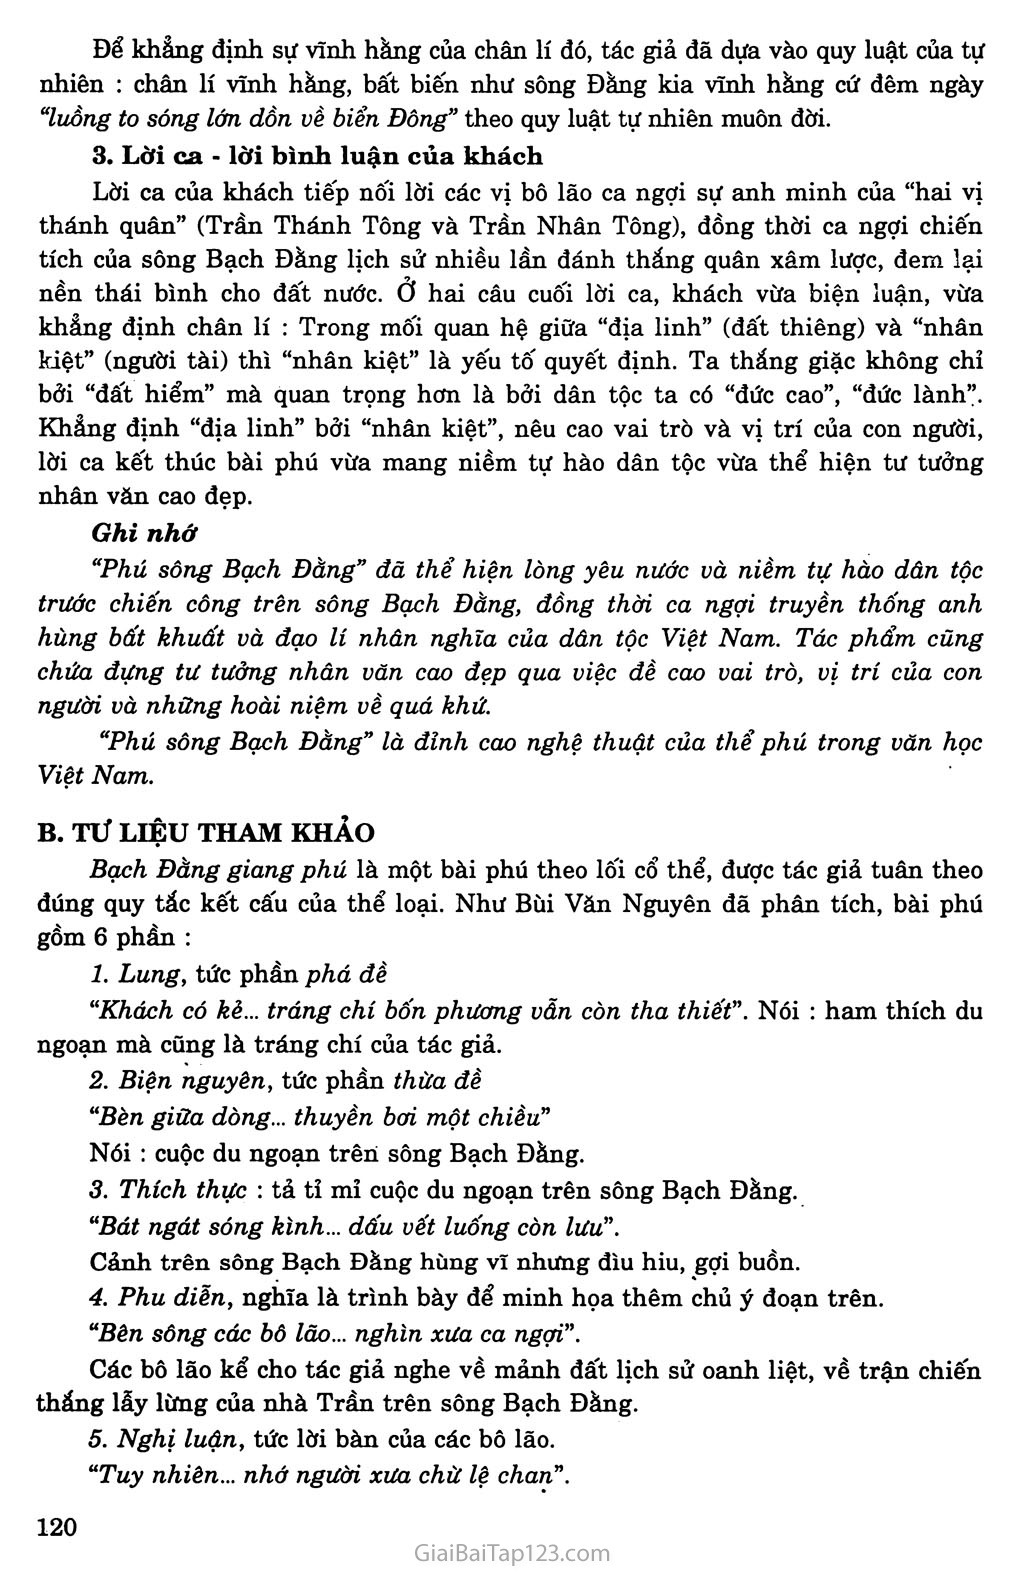 Phú sông Bạch Đằng (Bạch Đằng giang phú) trang 4